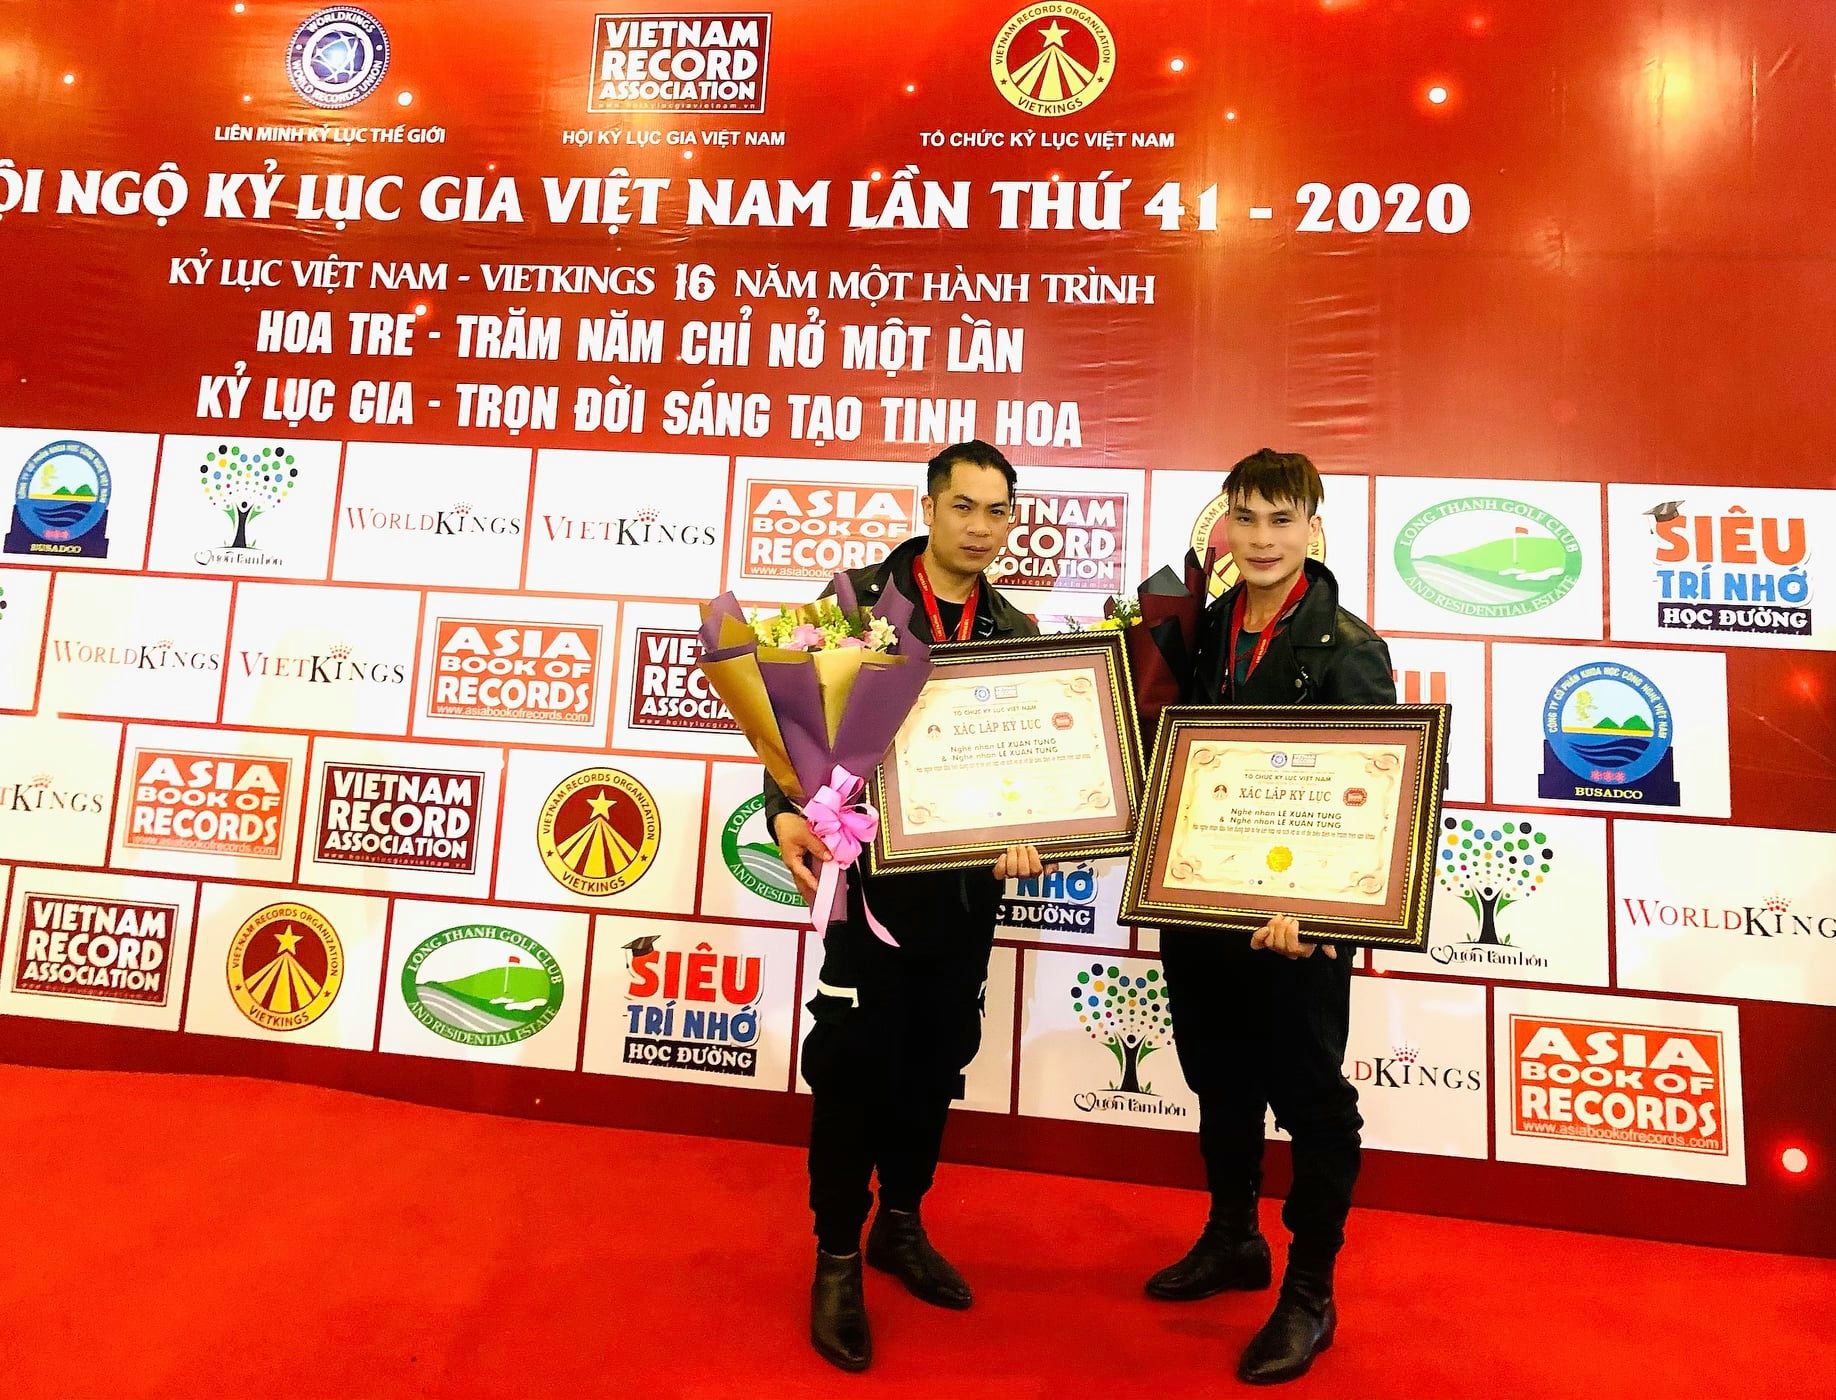 Hai nghệ nhân tò he Xuân Tung - Xuân Tùng xác lập kỷ lục quốc gia tại sự kiện Hội ngộ Kỷ lục gia Việt Nam lần thứ 41